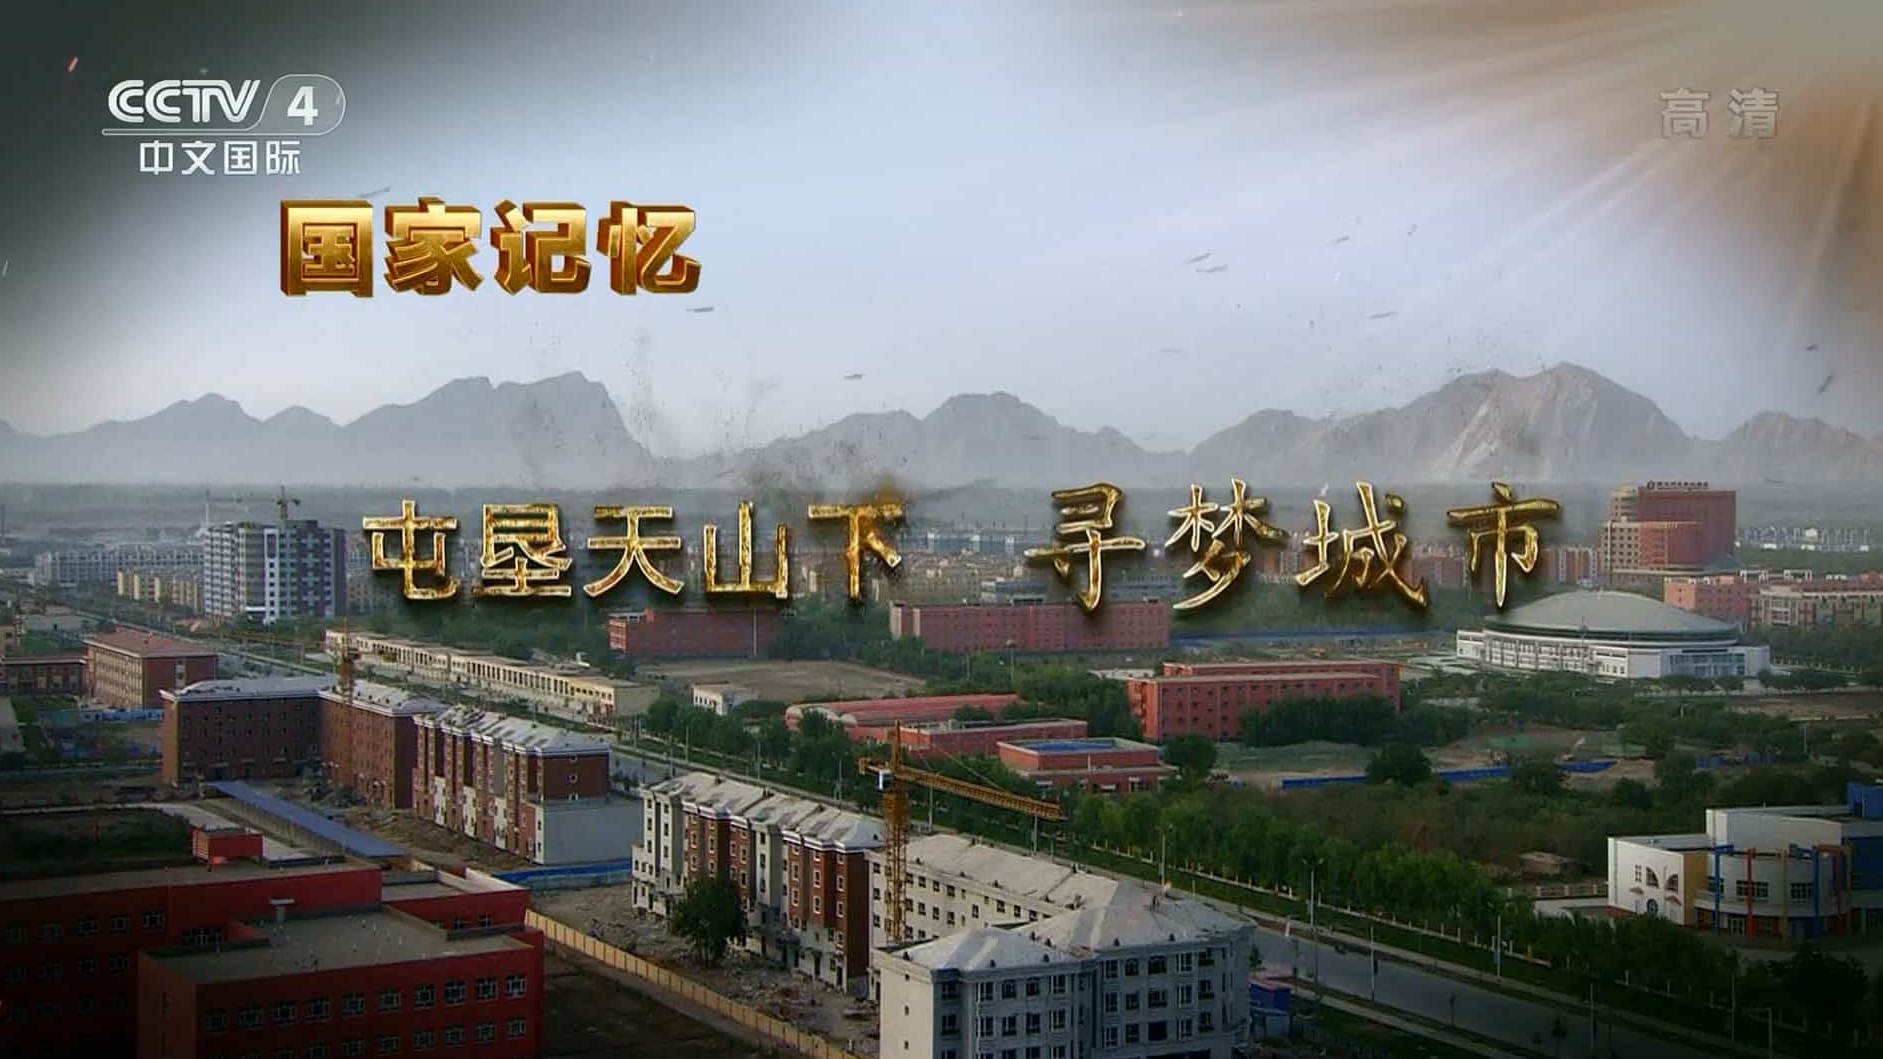  央视国家记忆系列《屯垦天山下 2021》汉语中字 1080i